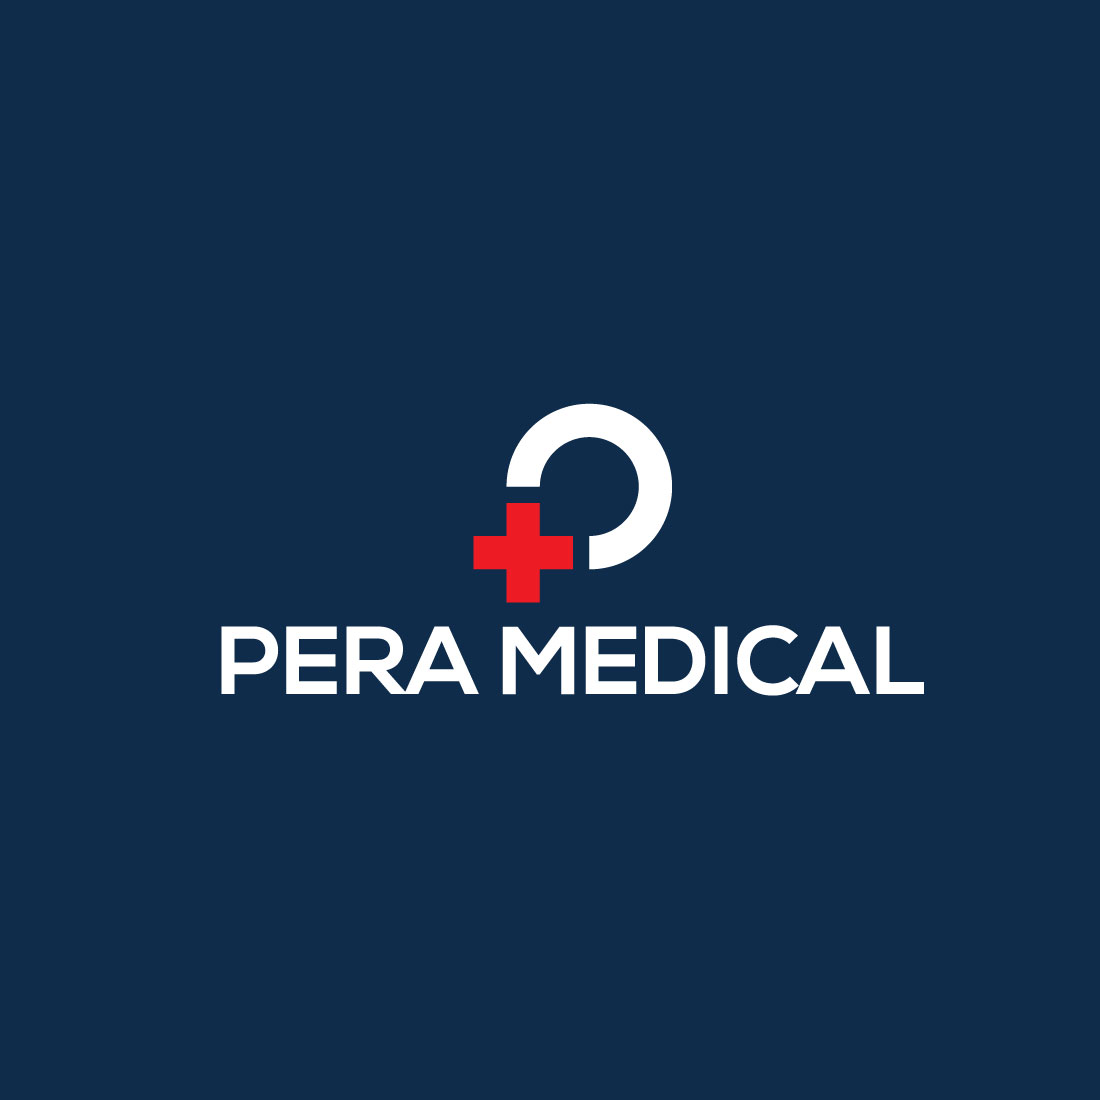 Para Medical Logo Design cover image.